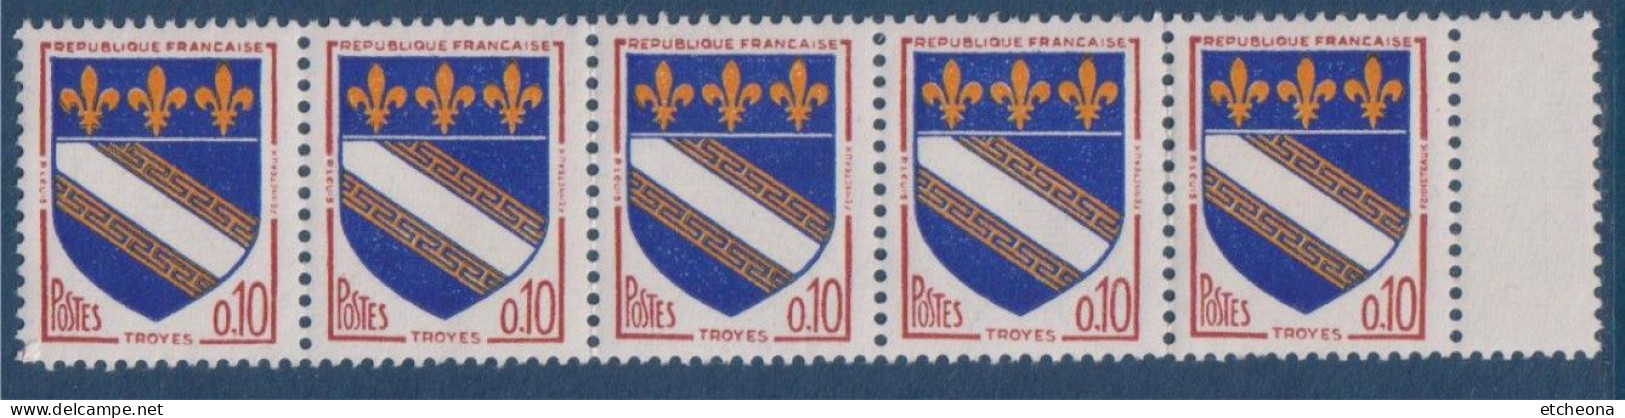 Troyes Armoiries De Villes IV N°1353 Bande De 5 Timbres Neufs Avec Pont De Feuille à Droite - 1941-66 Escudos Y Blasones